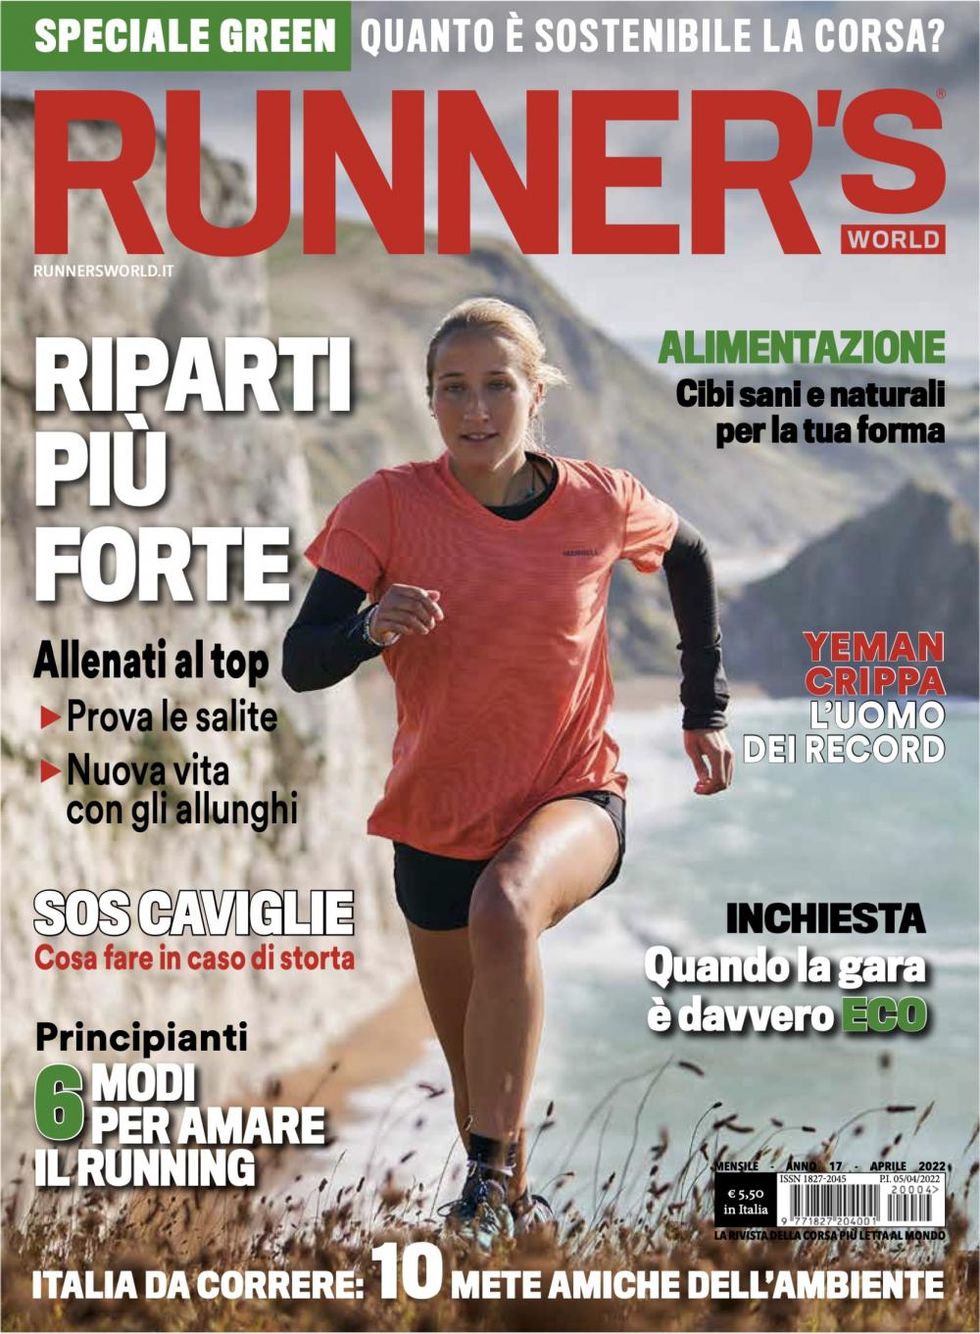 La cover del nuovo numero di Runner's World di aprile 2022